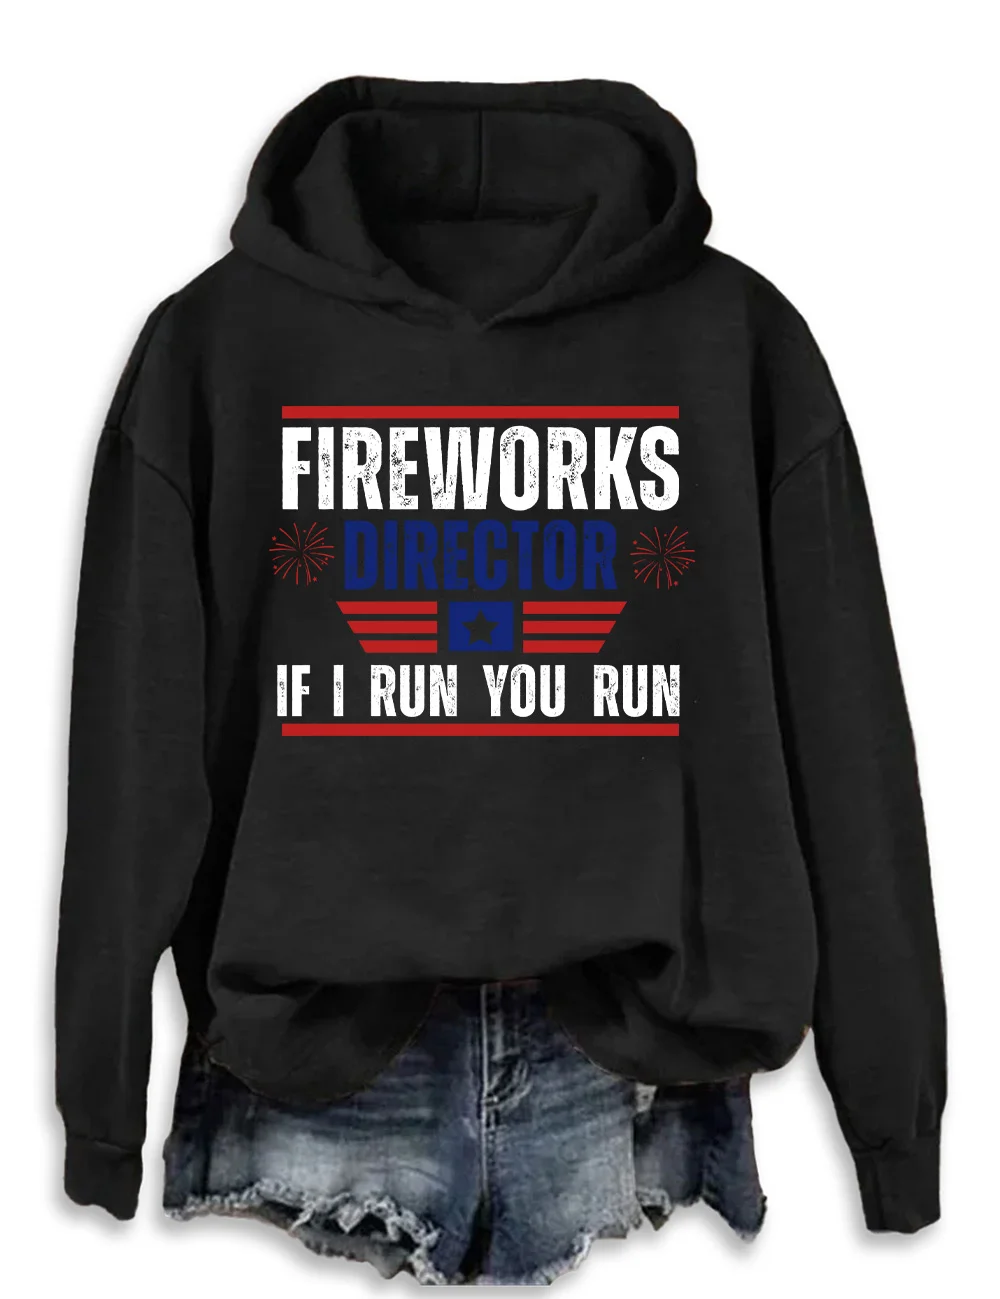 Fireworks Director I Run You Run Hoodie